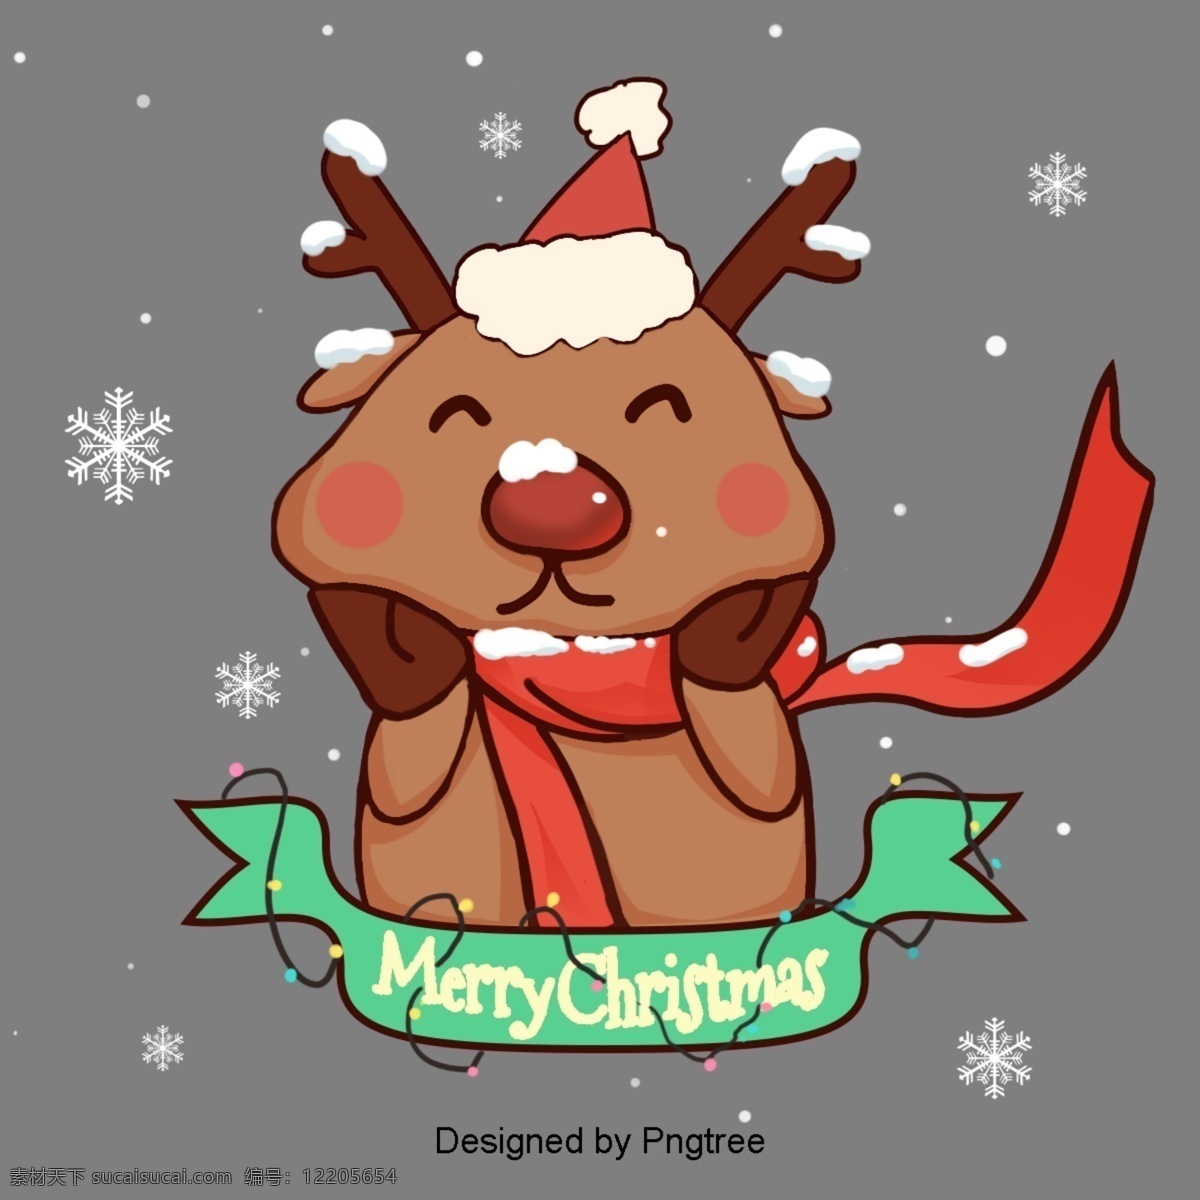 可爱 手绘 卡通 插图 圣诞节 驯鹿 冬天 圣诞 小鹿 的卡 通 鹿 麋鹿 圣诞快乐